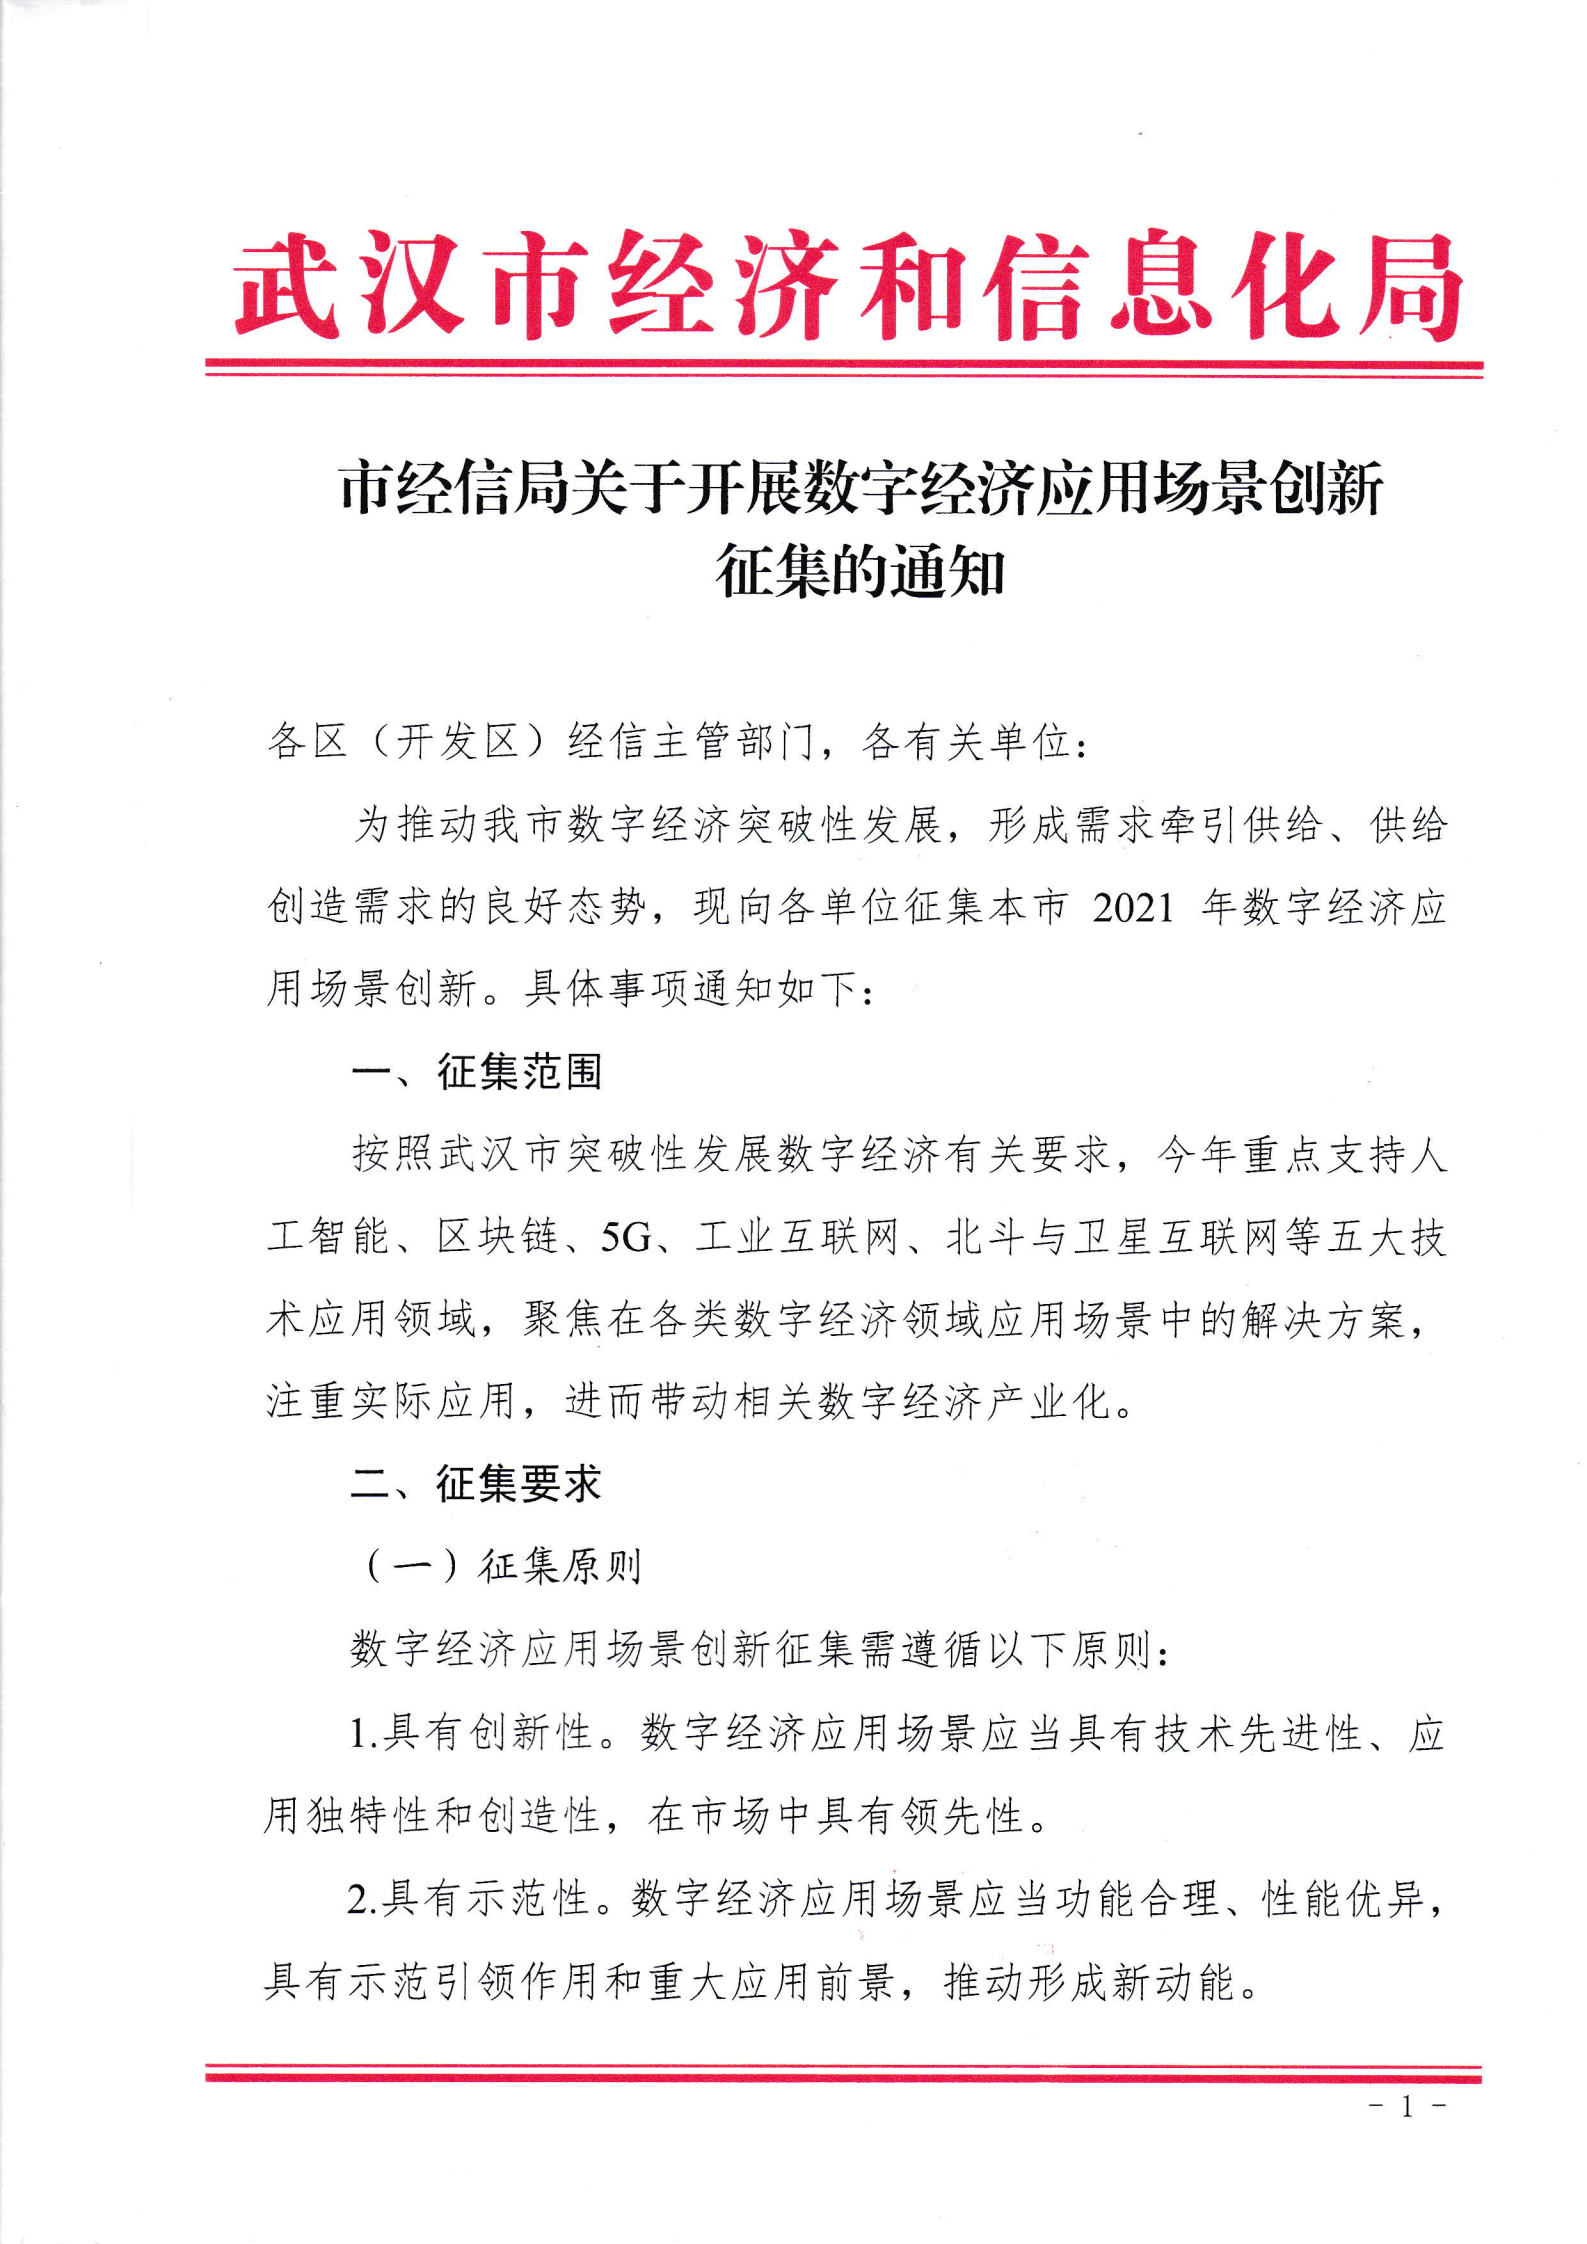 关于组织申报2021年武汉市数字经济应用场景的通知